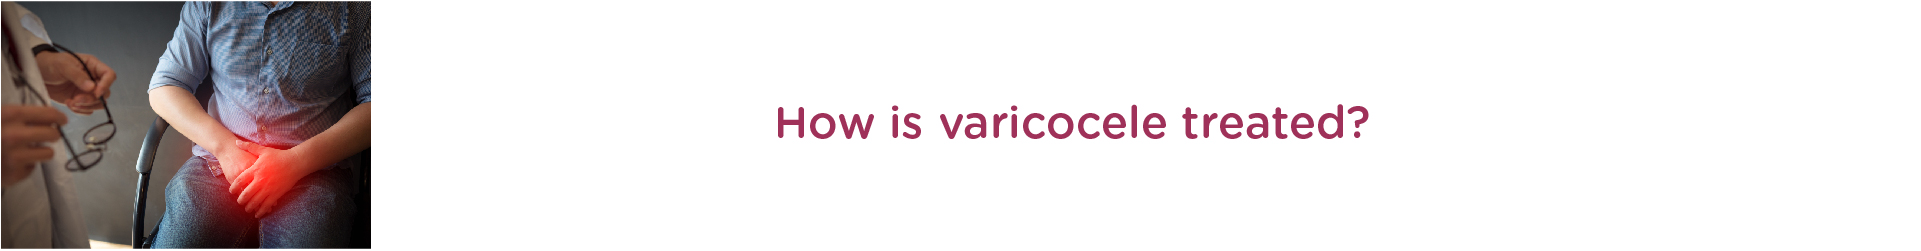 How is varicocele treated?